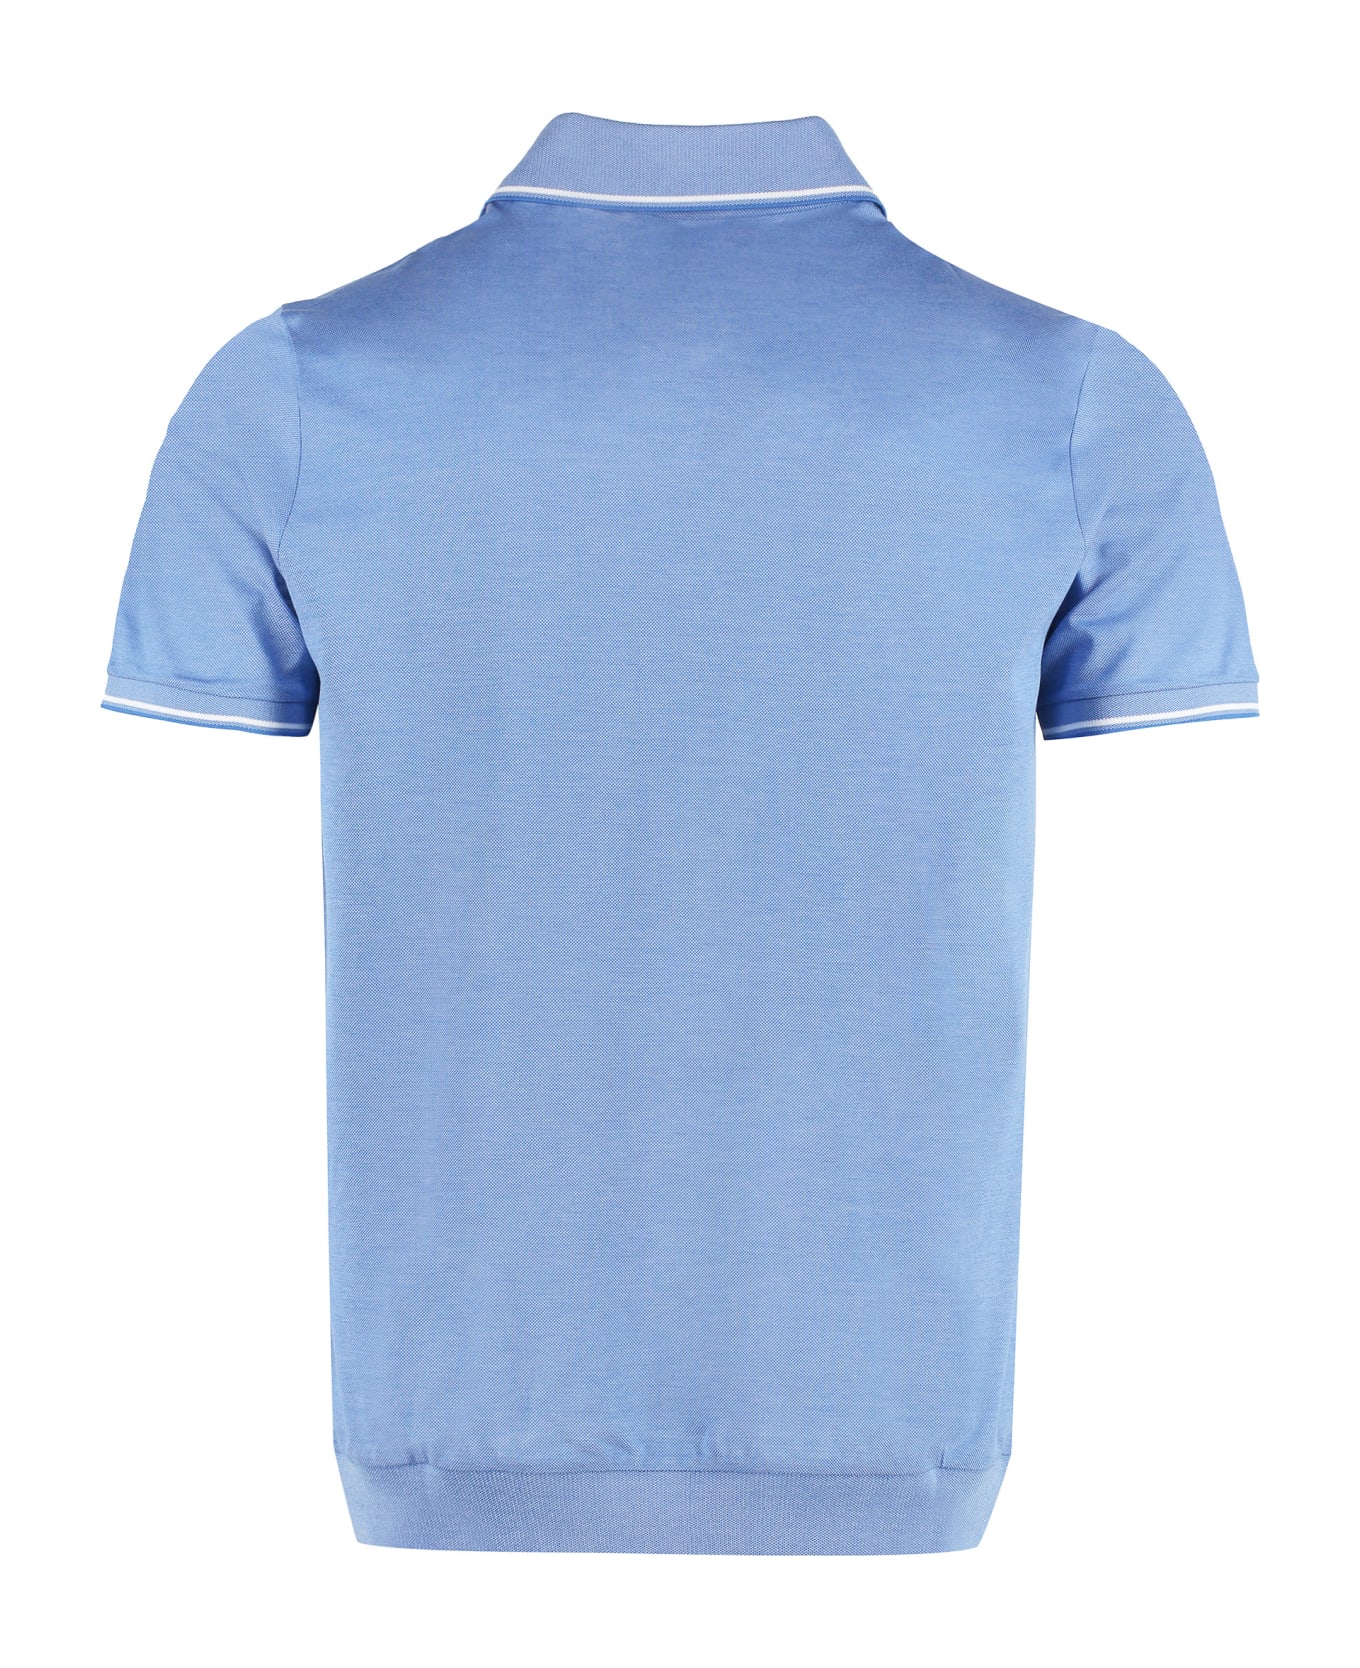 Paul&Shark Short Sleeve Cotton Polo Shirt - Light Blue ポロシャツ